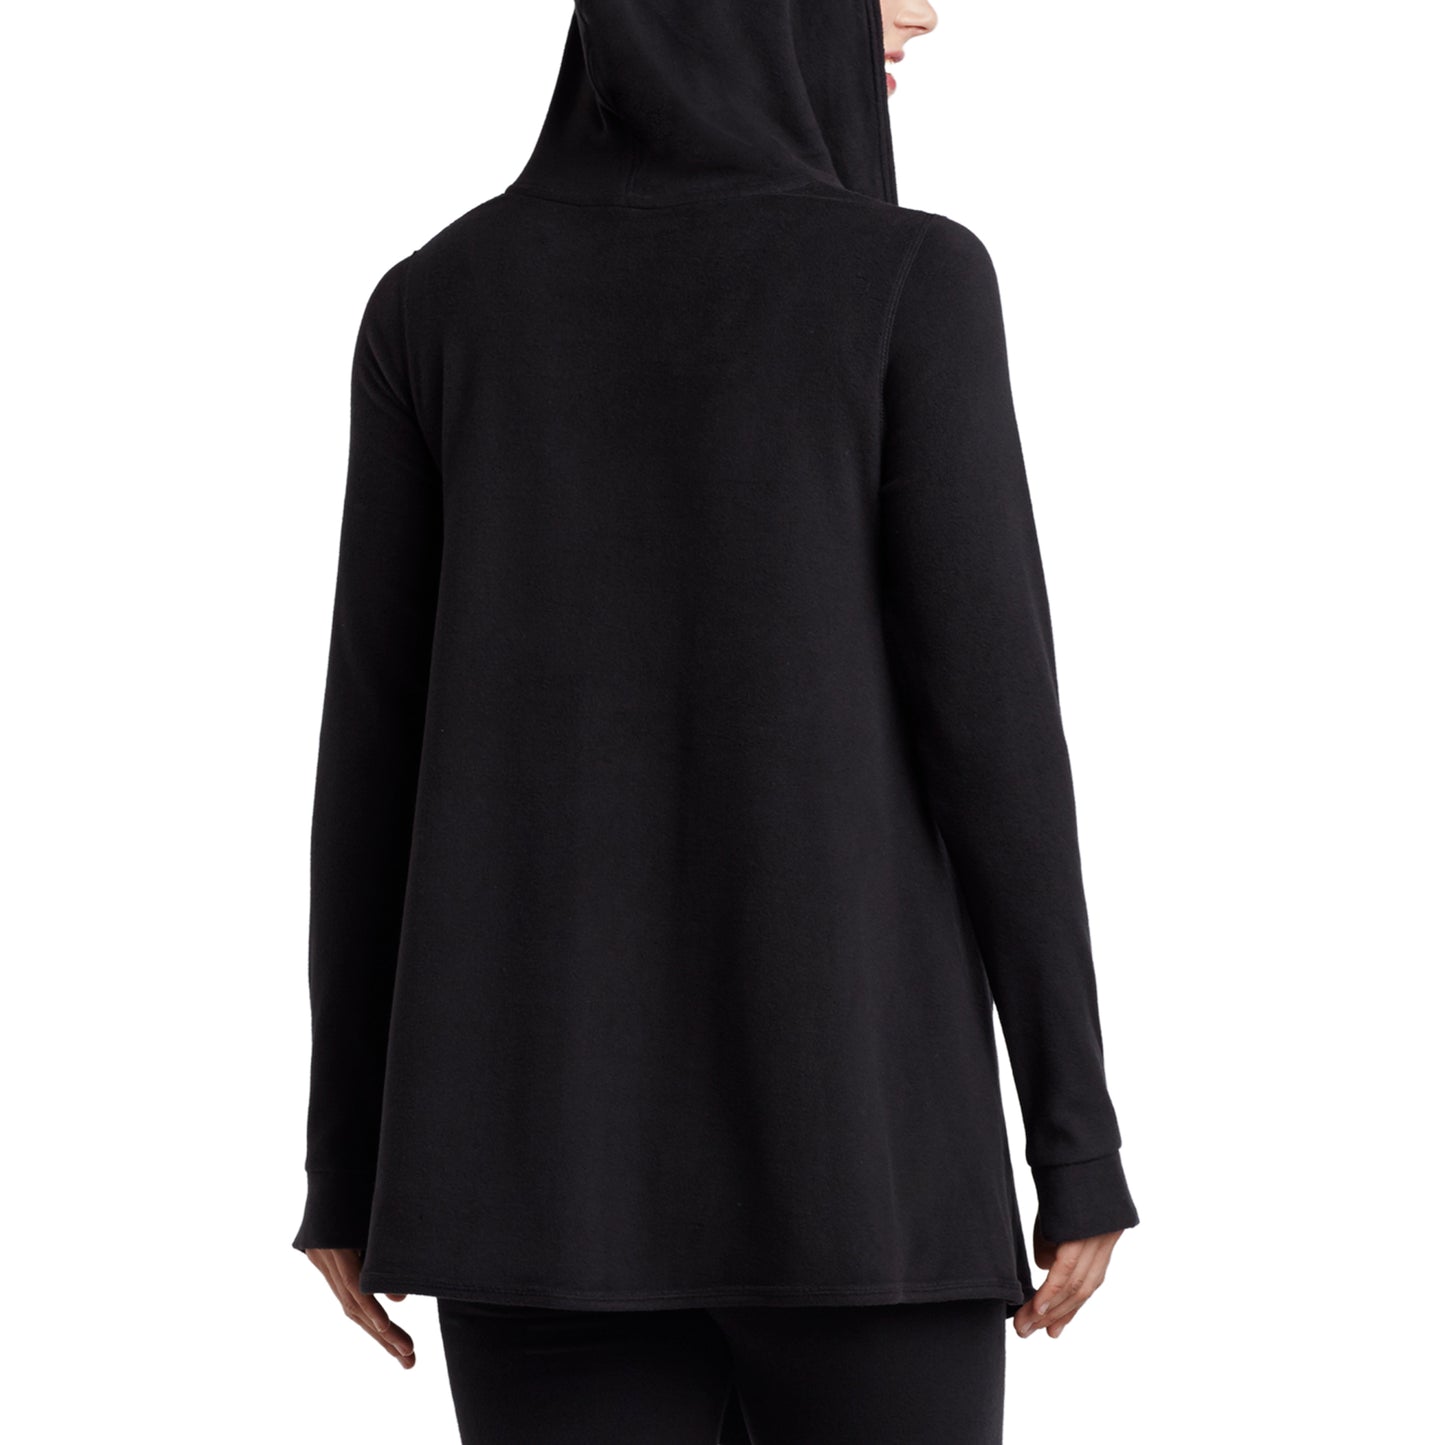 Black; Model is wearing size S. She is 5’9”, Bust 32”, Waist 25.5”, Hips 36”.@Upper body of a lady wearing long sleeve black hooded wrap